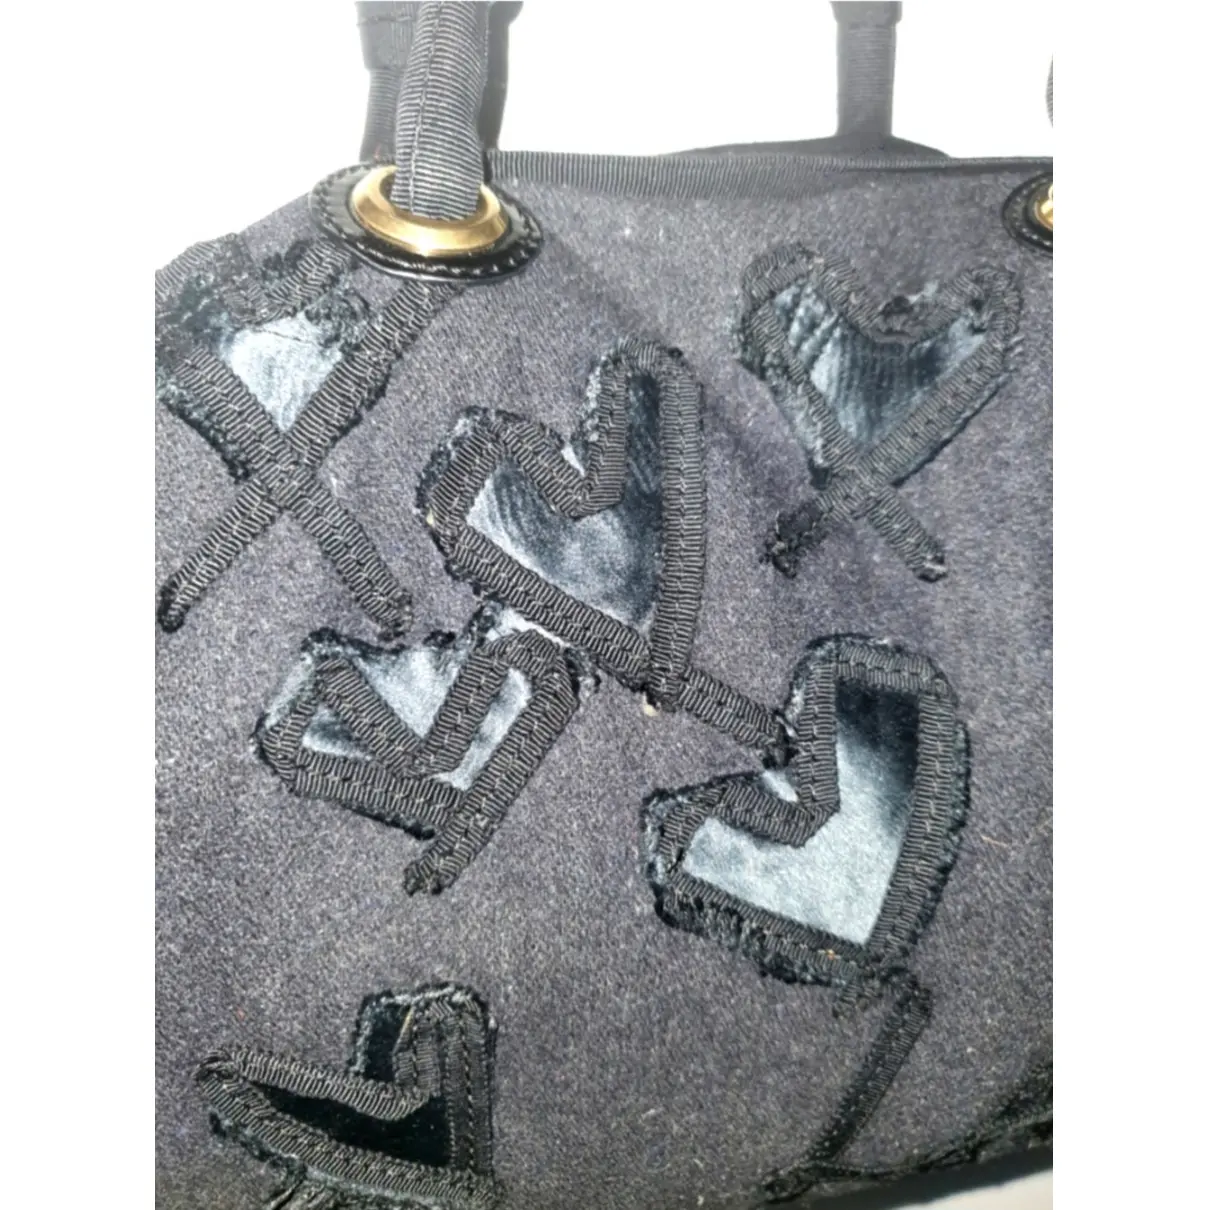 Luxury Lanvin Handbags Women